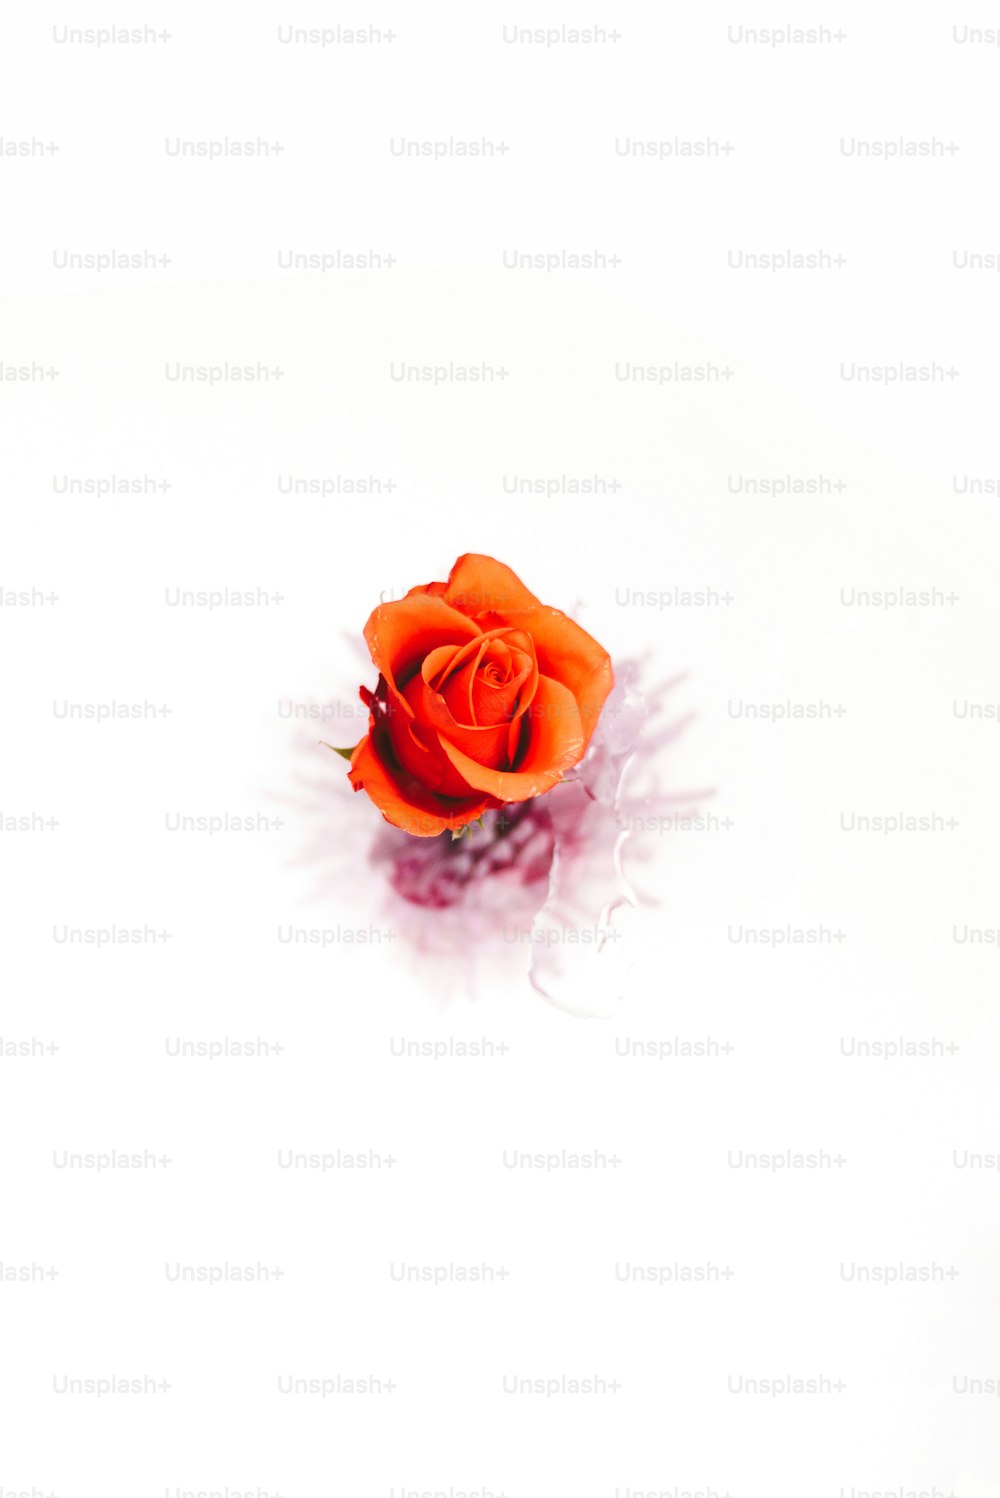 une seule rose orange sur une surface blanche